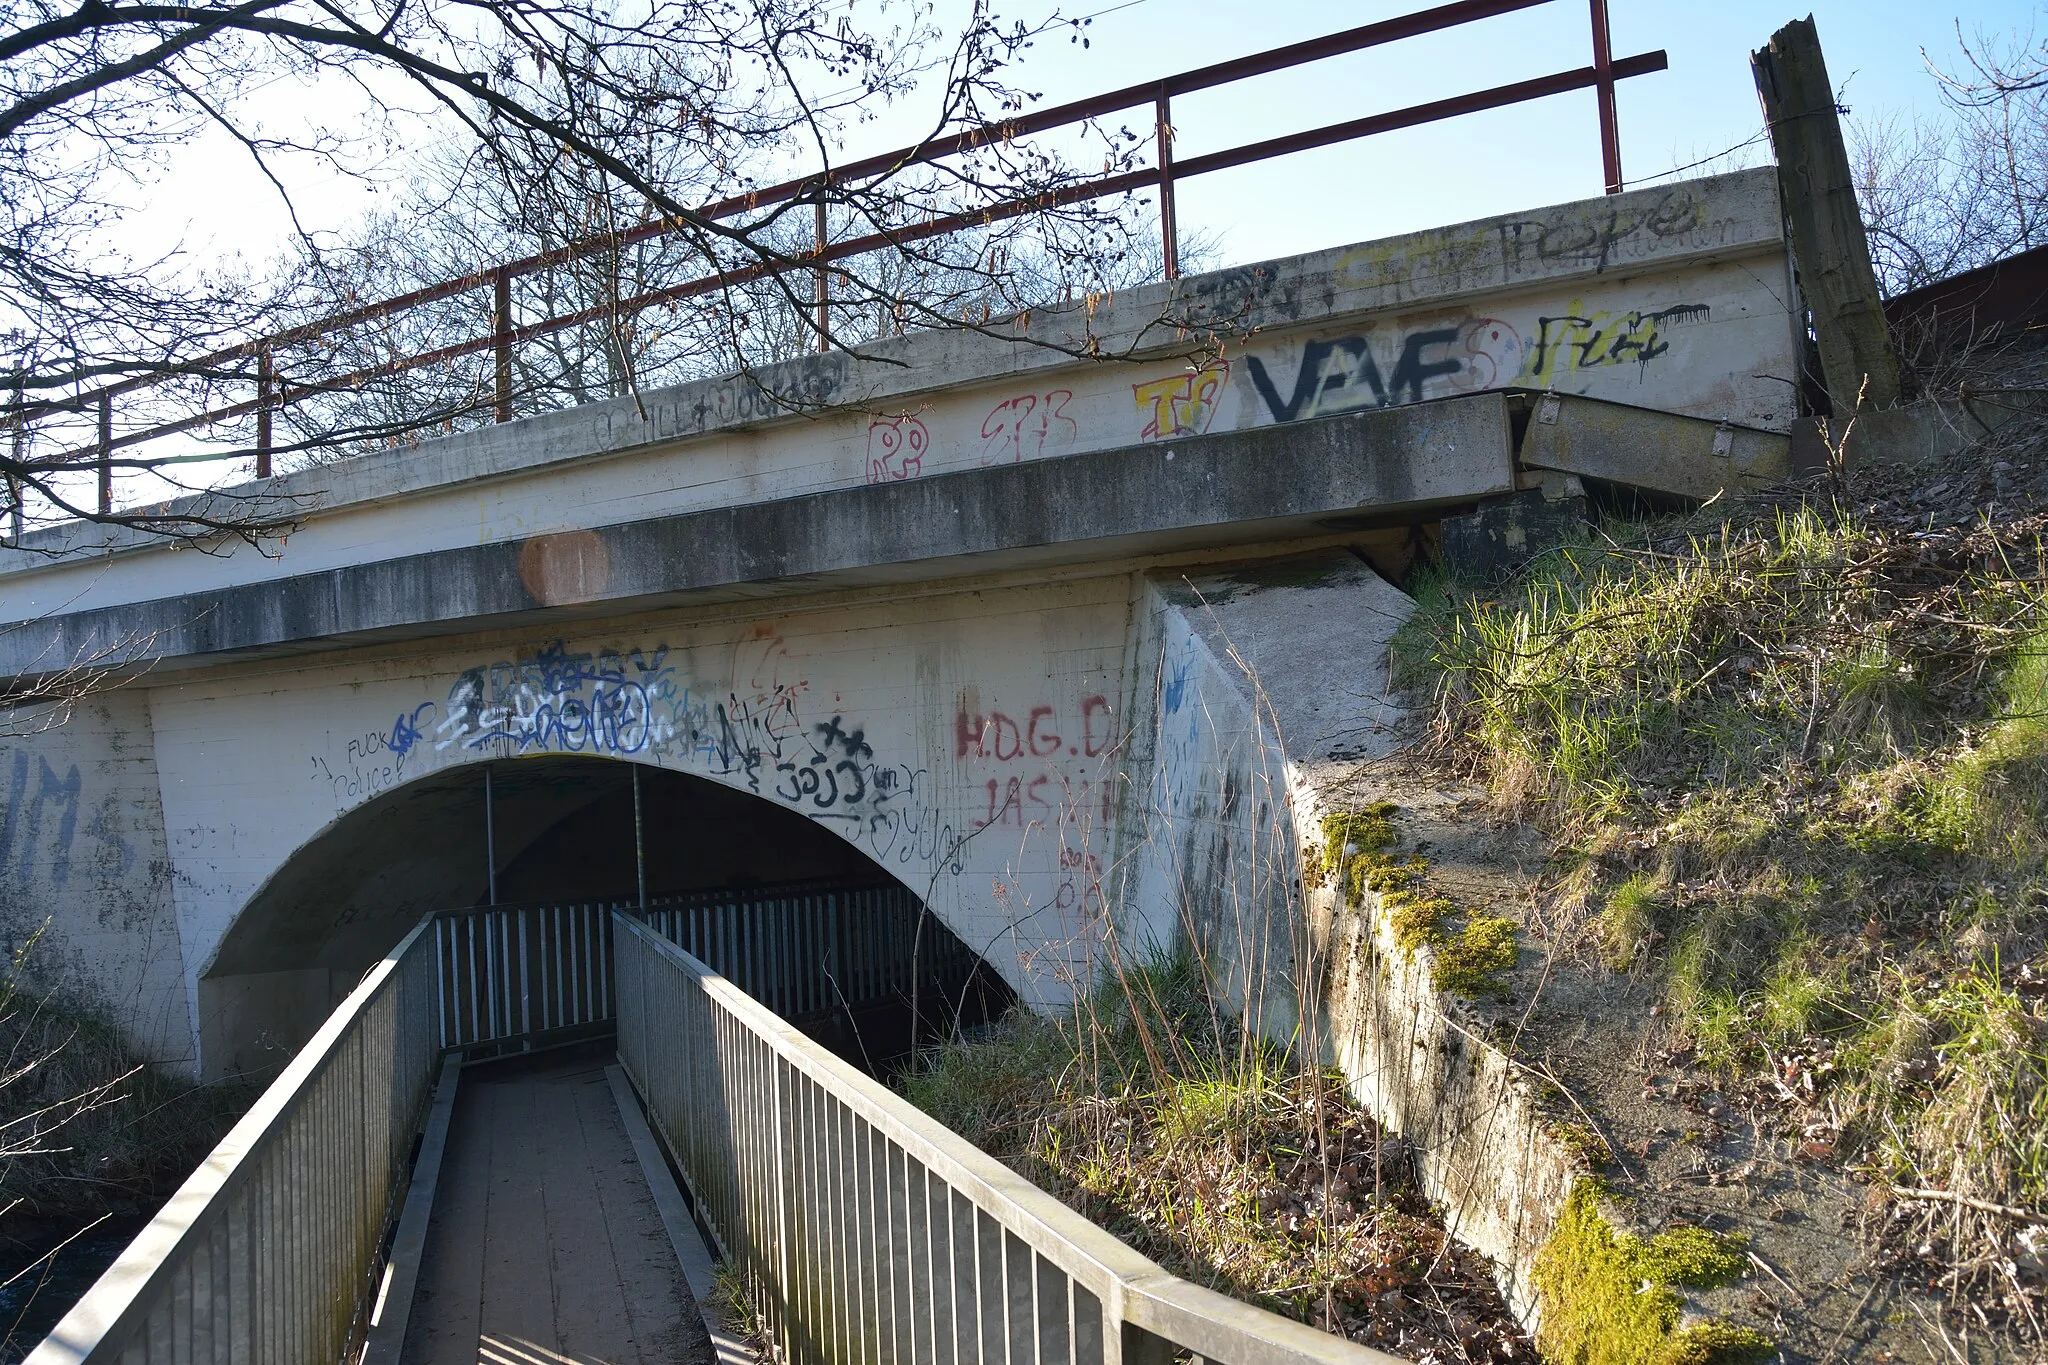 Photo showing: Eisenbahnbrücke für die Bahnstrecke Hamburg-Altona–Neumünster

Unterhalb der Eisenbahnbrücke befindet sich eine aufgehängte Fußgängerbrücke, die drei verschiedene Wanderwege verbindet.